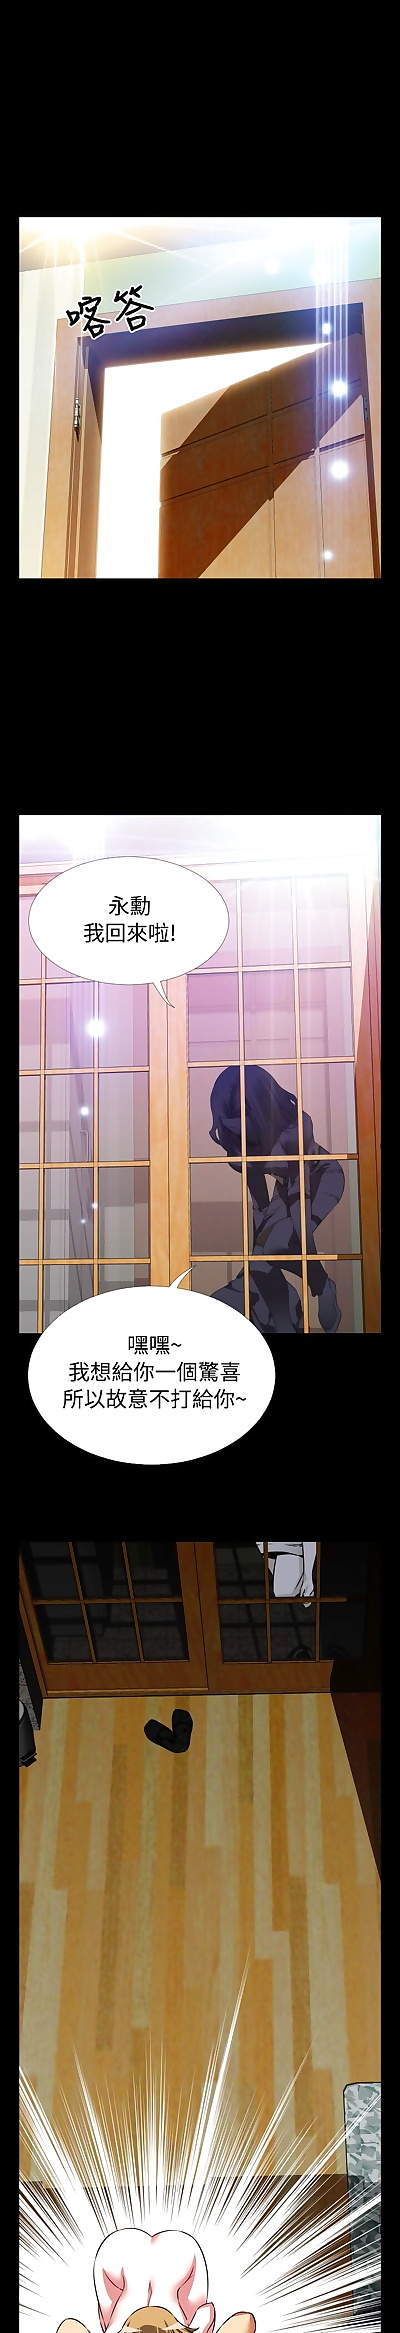 चीनी मंगा KKUN &INSANE Love Parameter.., full color , manga 